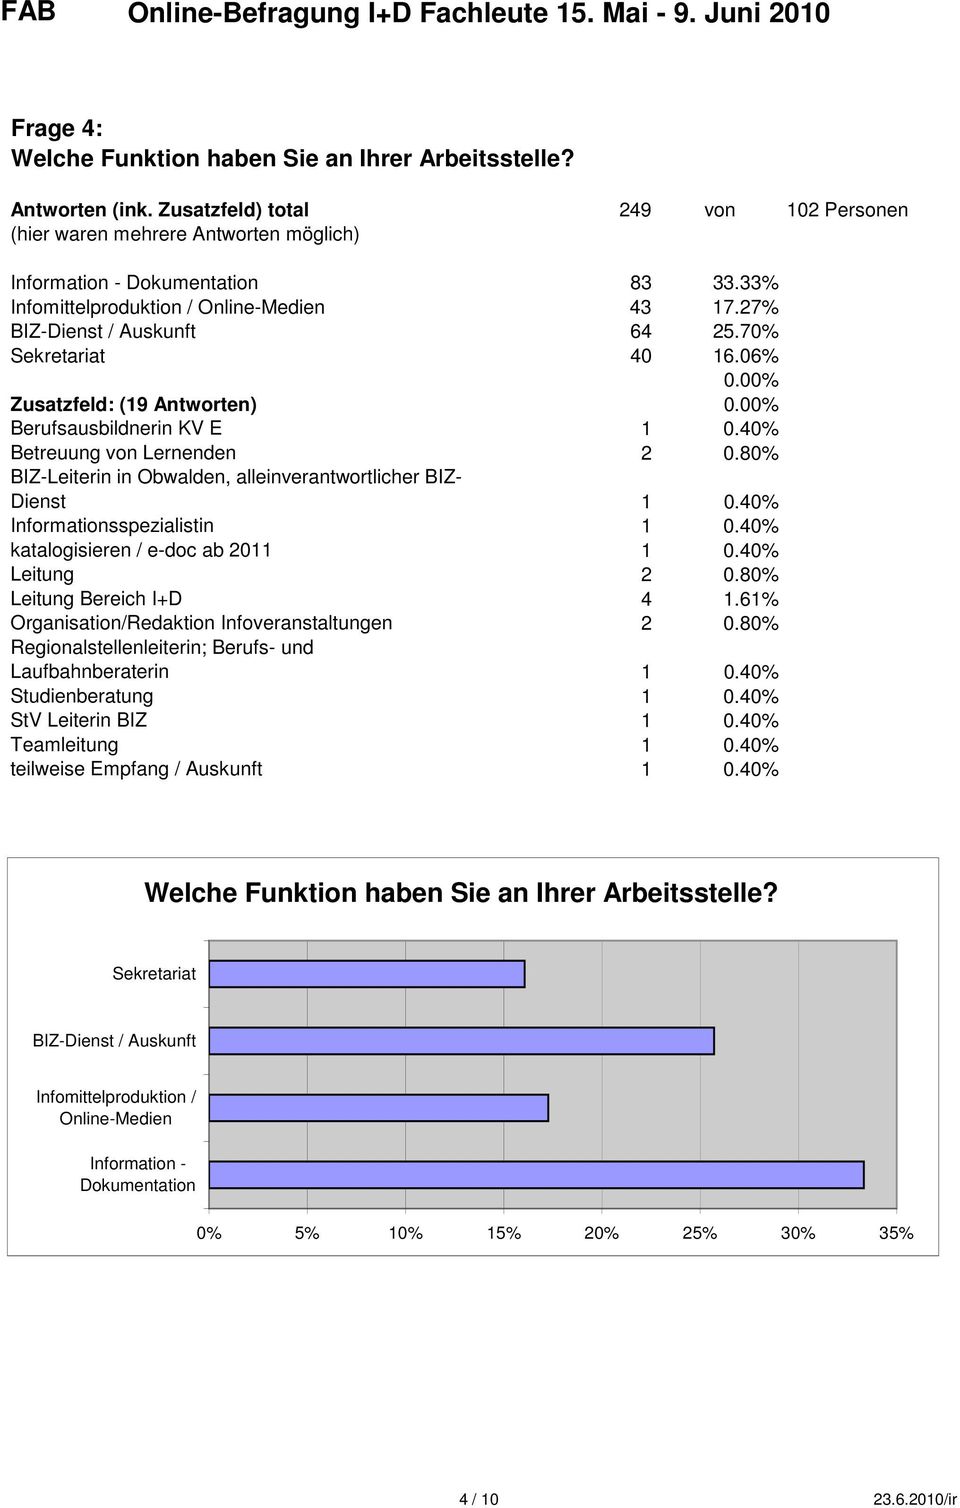 40% Betreuung von Lernenden 2 0.80% BIZ-Leiterin in Obwalden, alleinverantwortlicher BIZ- Dienst 1 0.40% Informationsspezialistin 1 0.40% katalogisieren / e-doc ab 2011 1 0.40% Leitung 2 0.